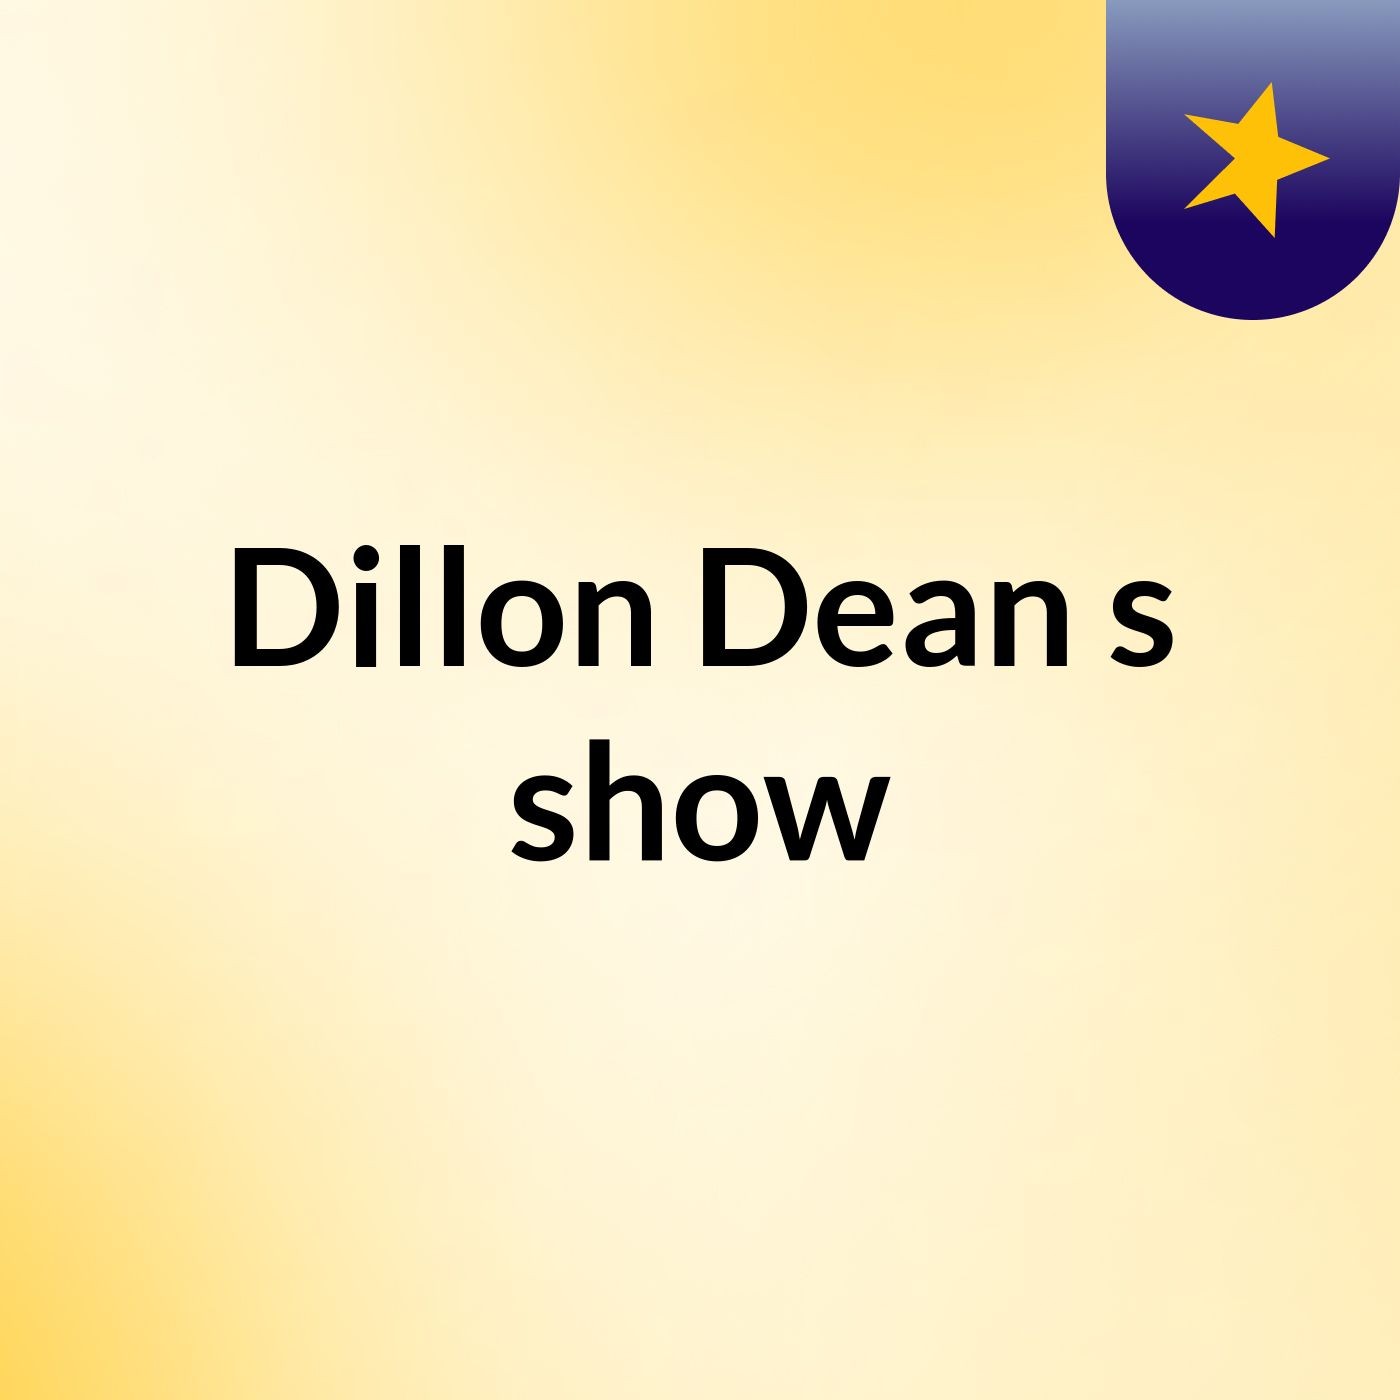 Dillon Dean's show